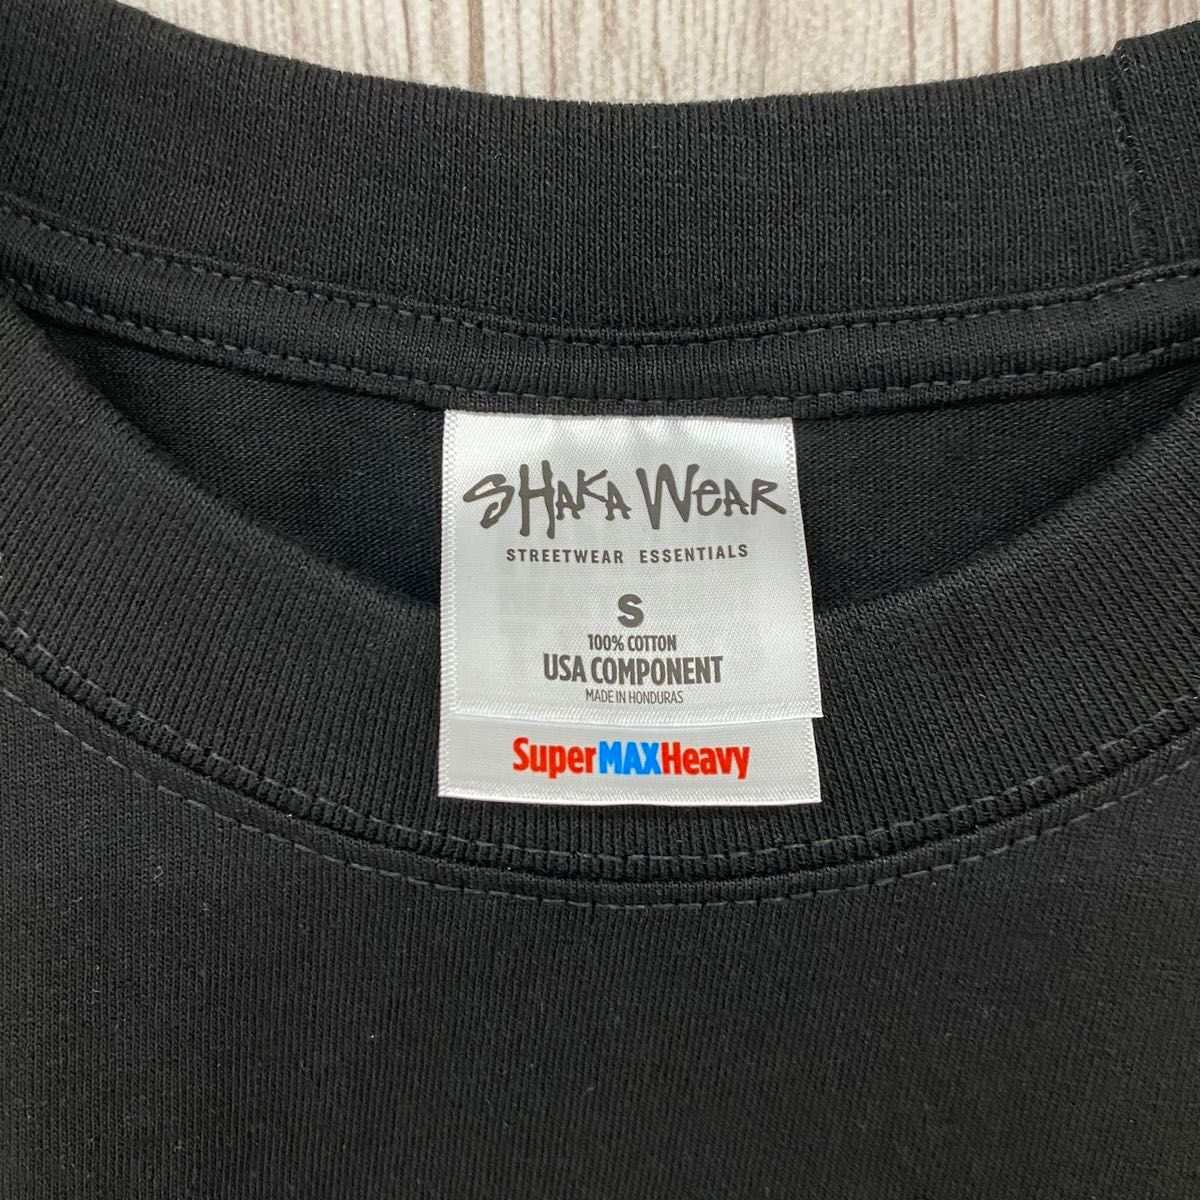 新品未使用 シャカウェア 7.5oz マックスヘビーウエイト 無地 半袖Tシャツ 黒 Sサイズ SHAKAWEAR